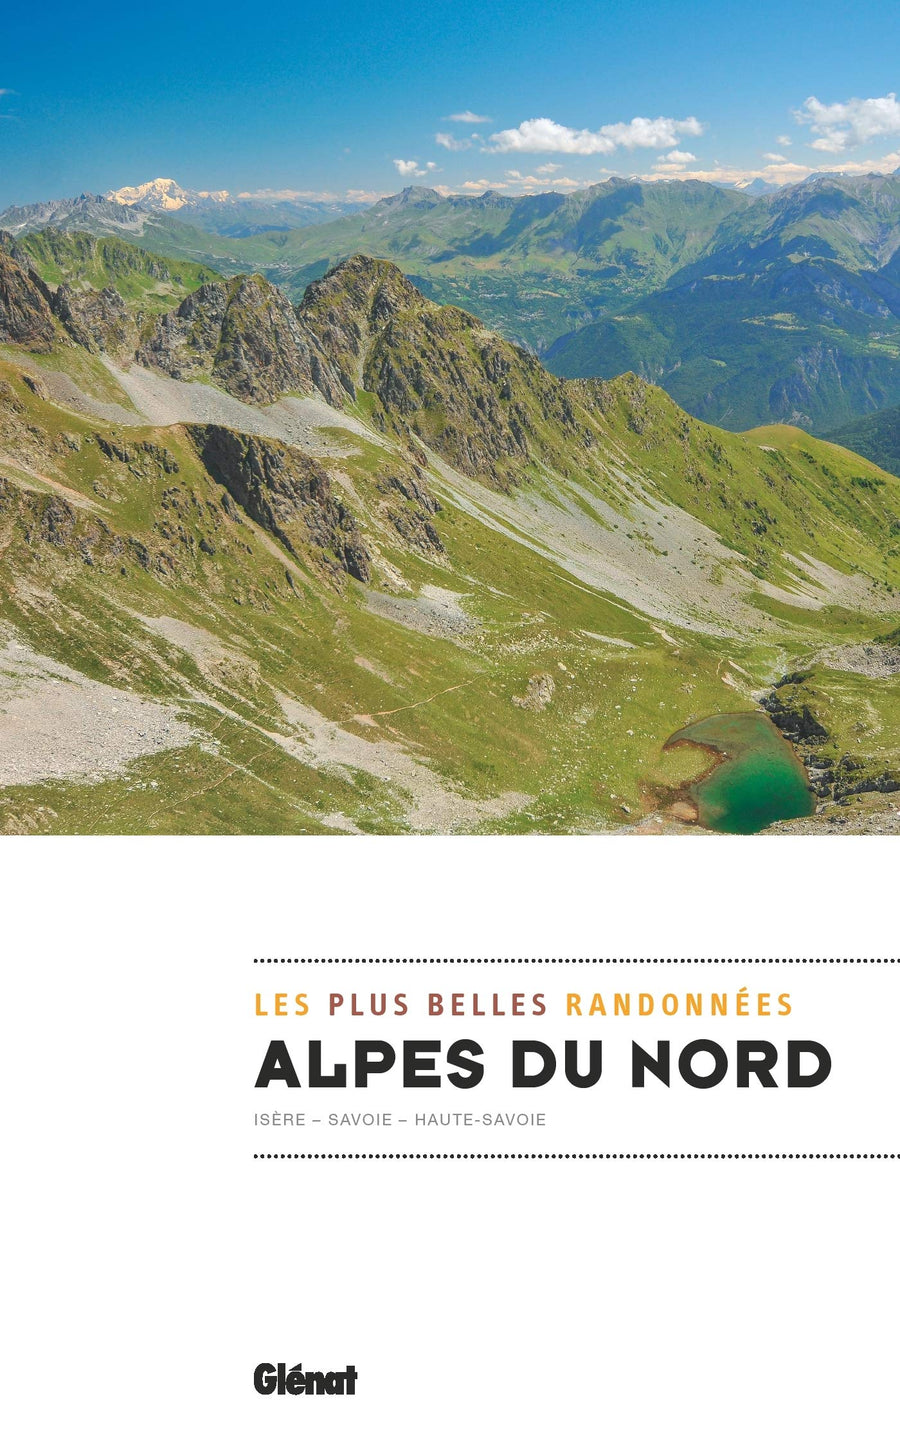 Guide de randonnées - Alpes du Nord, les plus belles randonnées (Savoie, Haute-Savoie, Isère) | Glénat guide de randonnée Glénat 